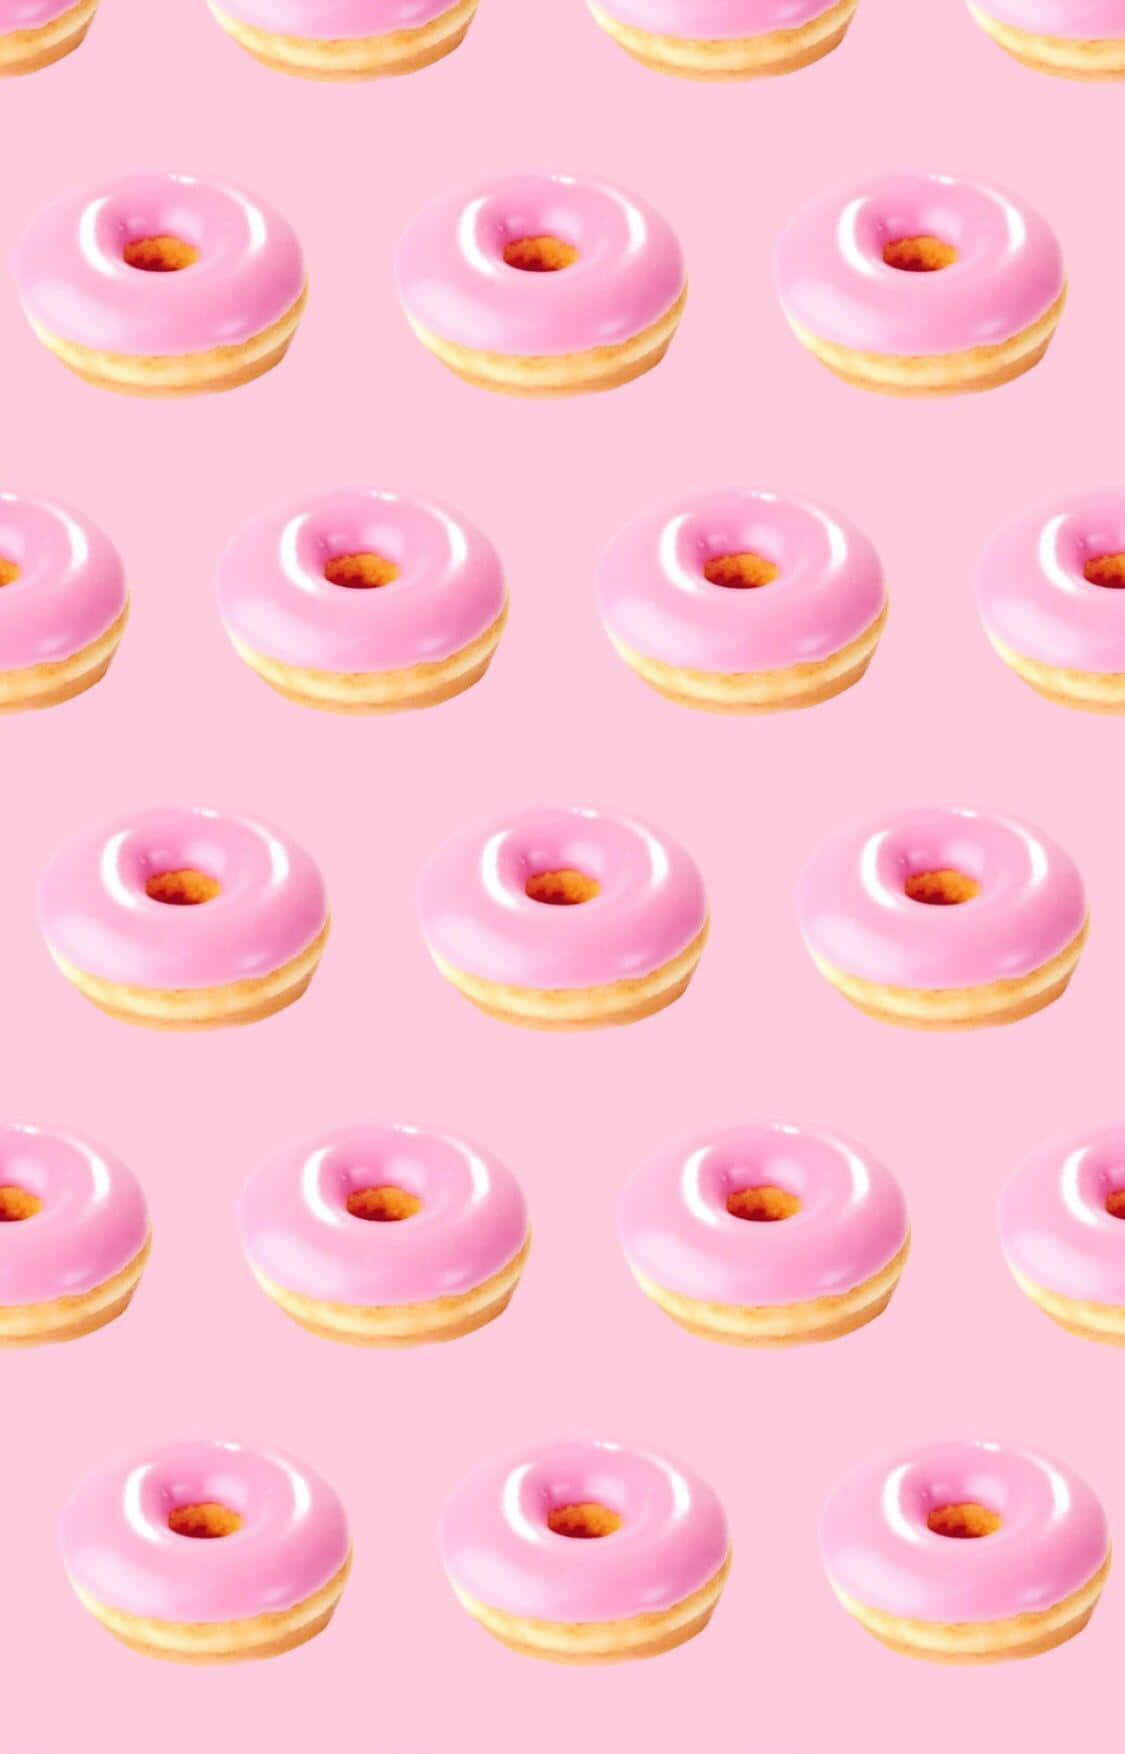 Imagensde Donuts - Para Wallpapers De Computador Ou Telemóvel